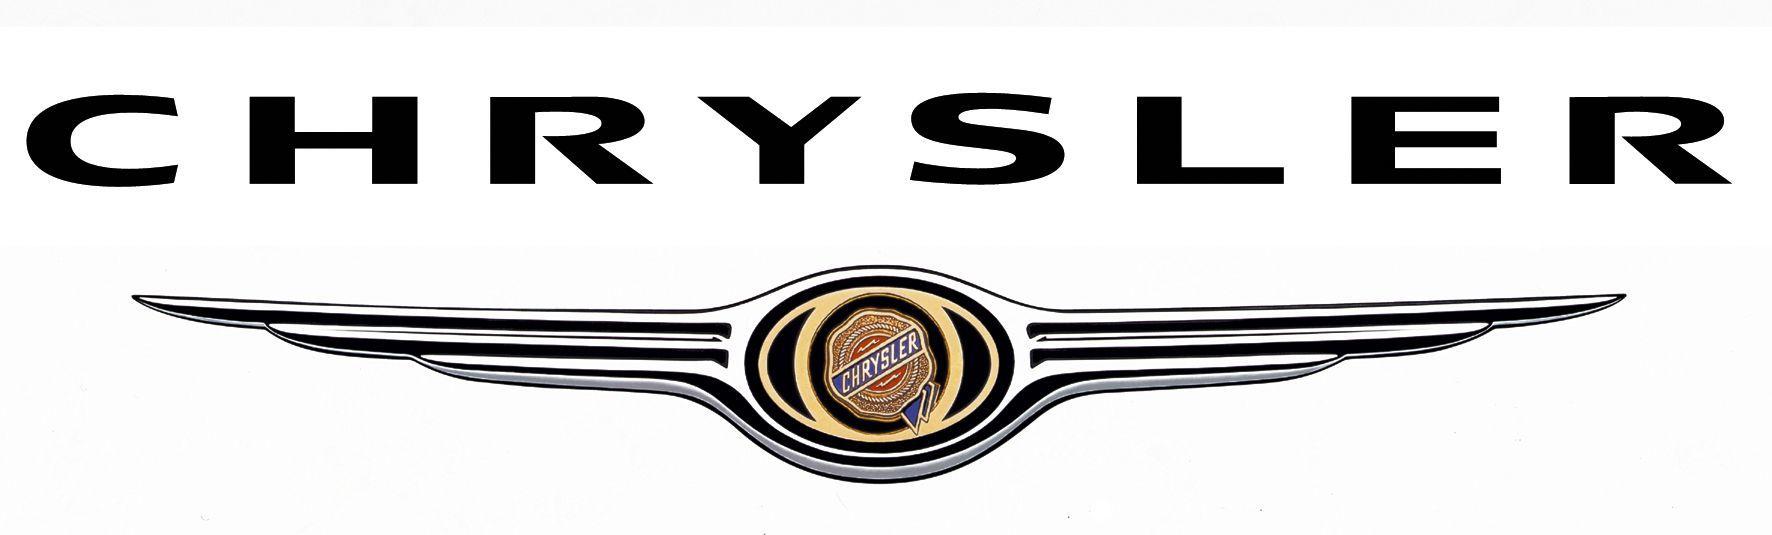 Top Automotive Logo - Chrysler logo. Car Company Logos. Chrysler logo, Cars, Chrysler 300